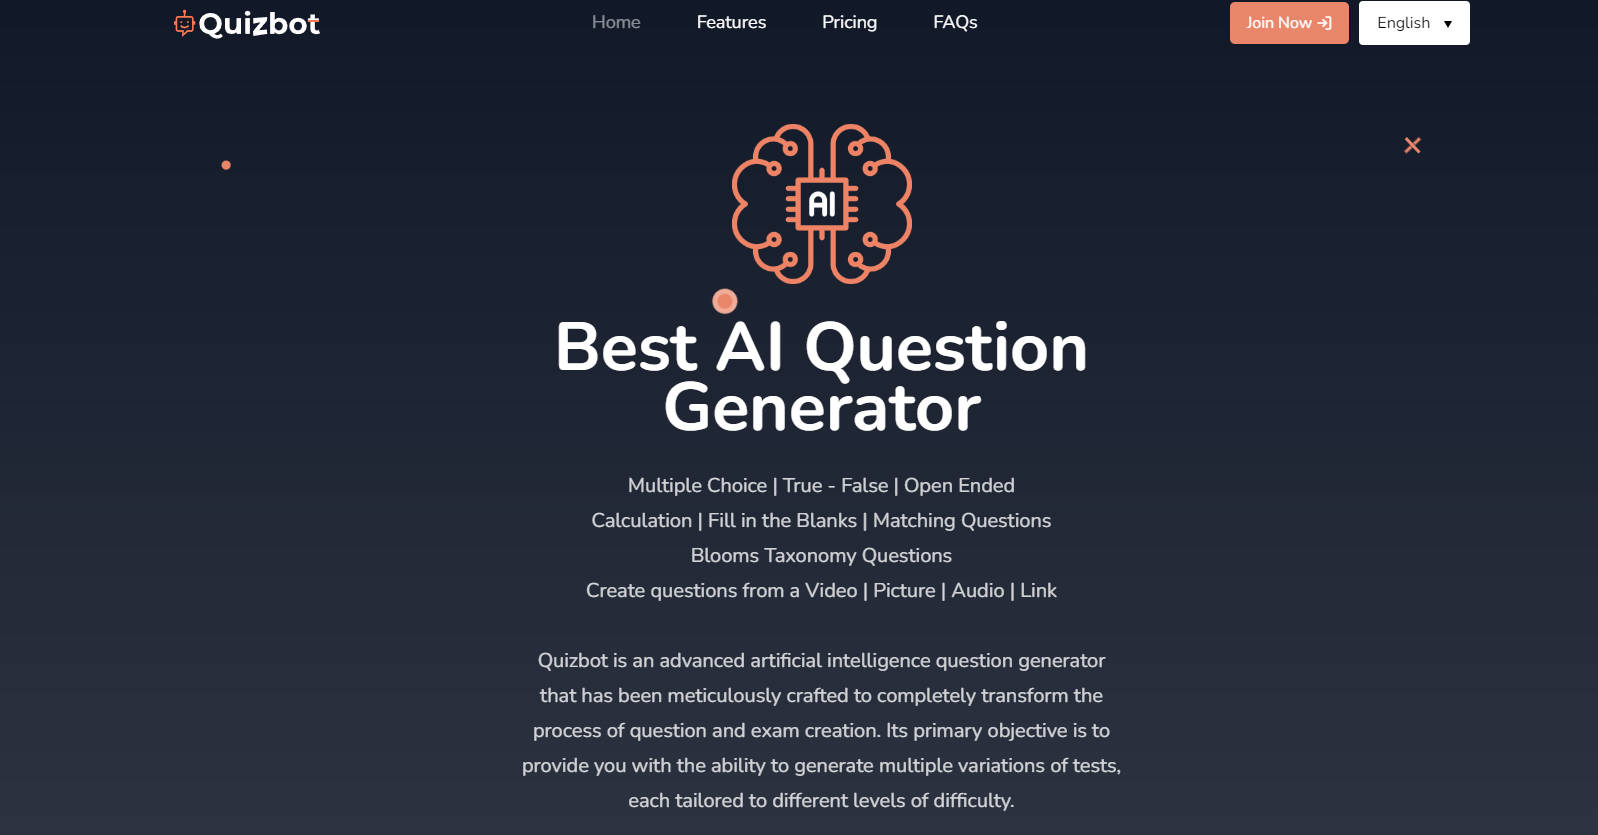 Quizbot AI